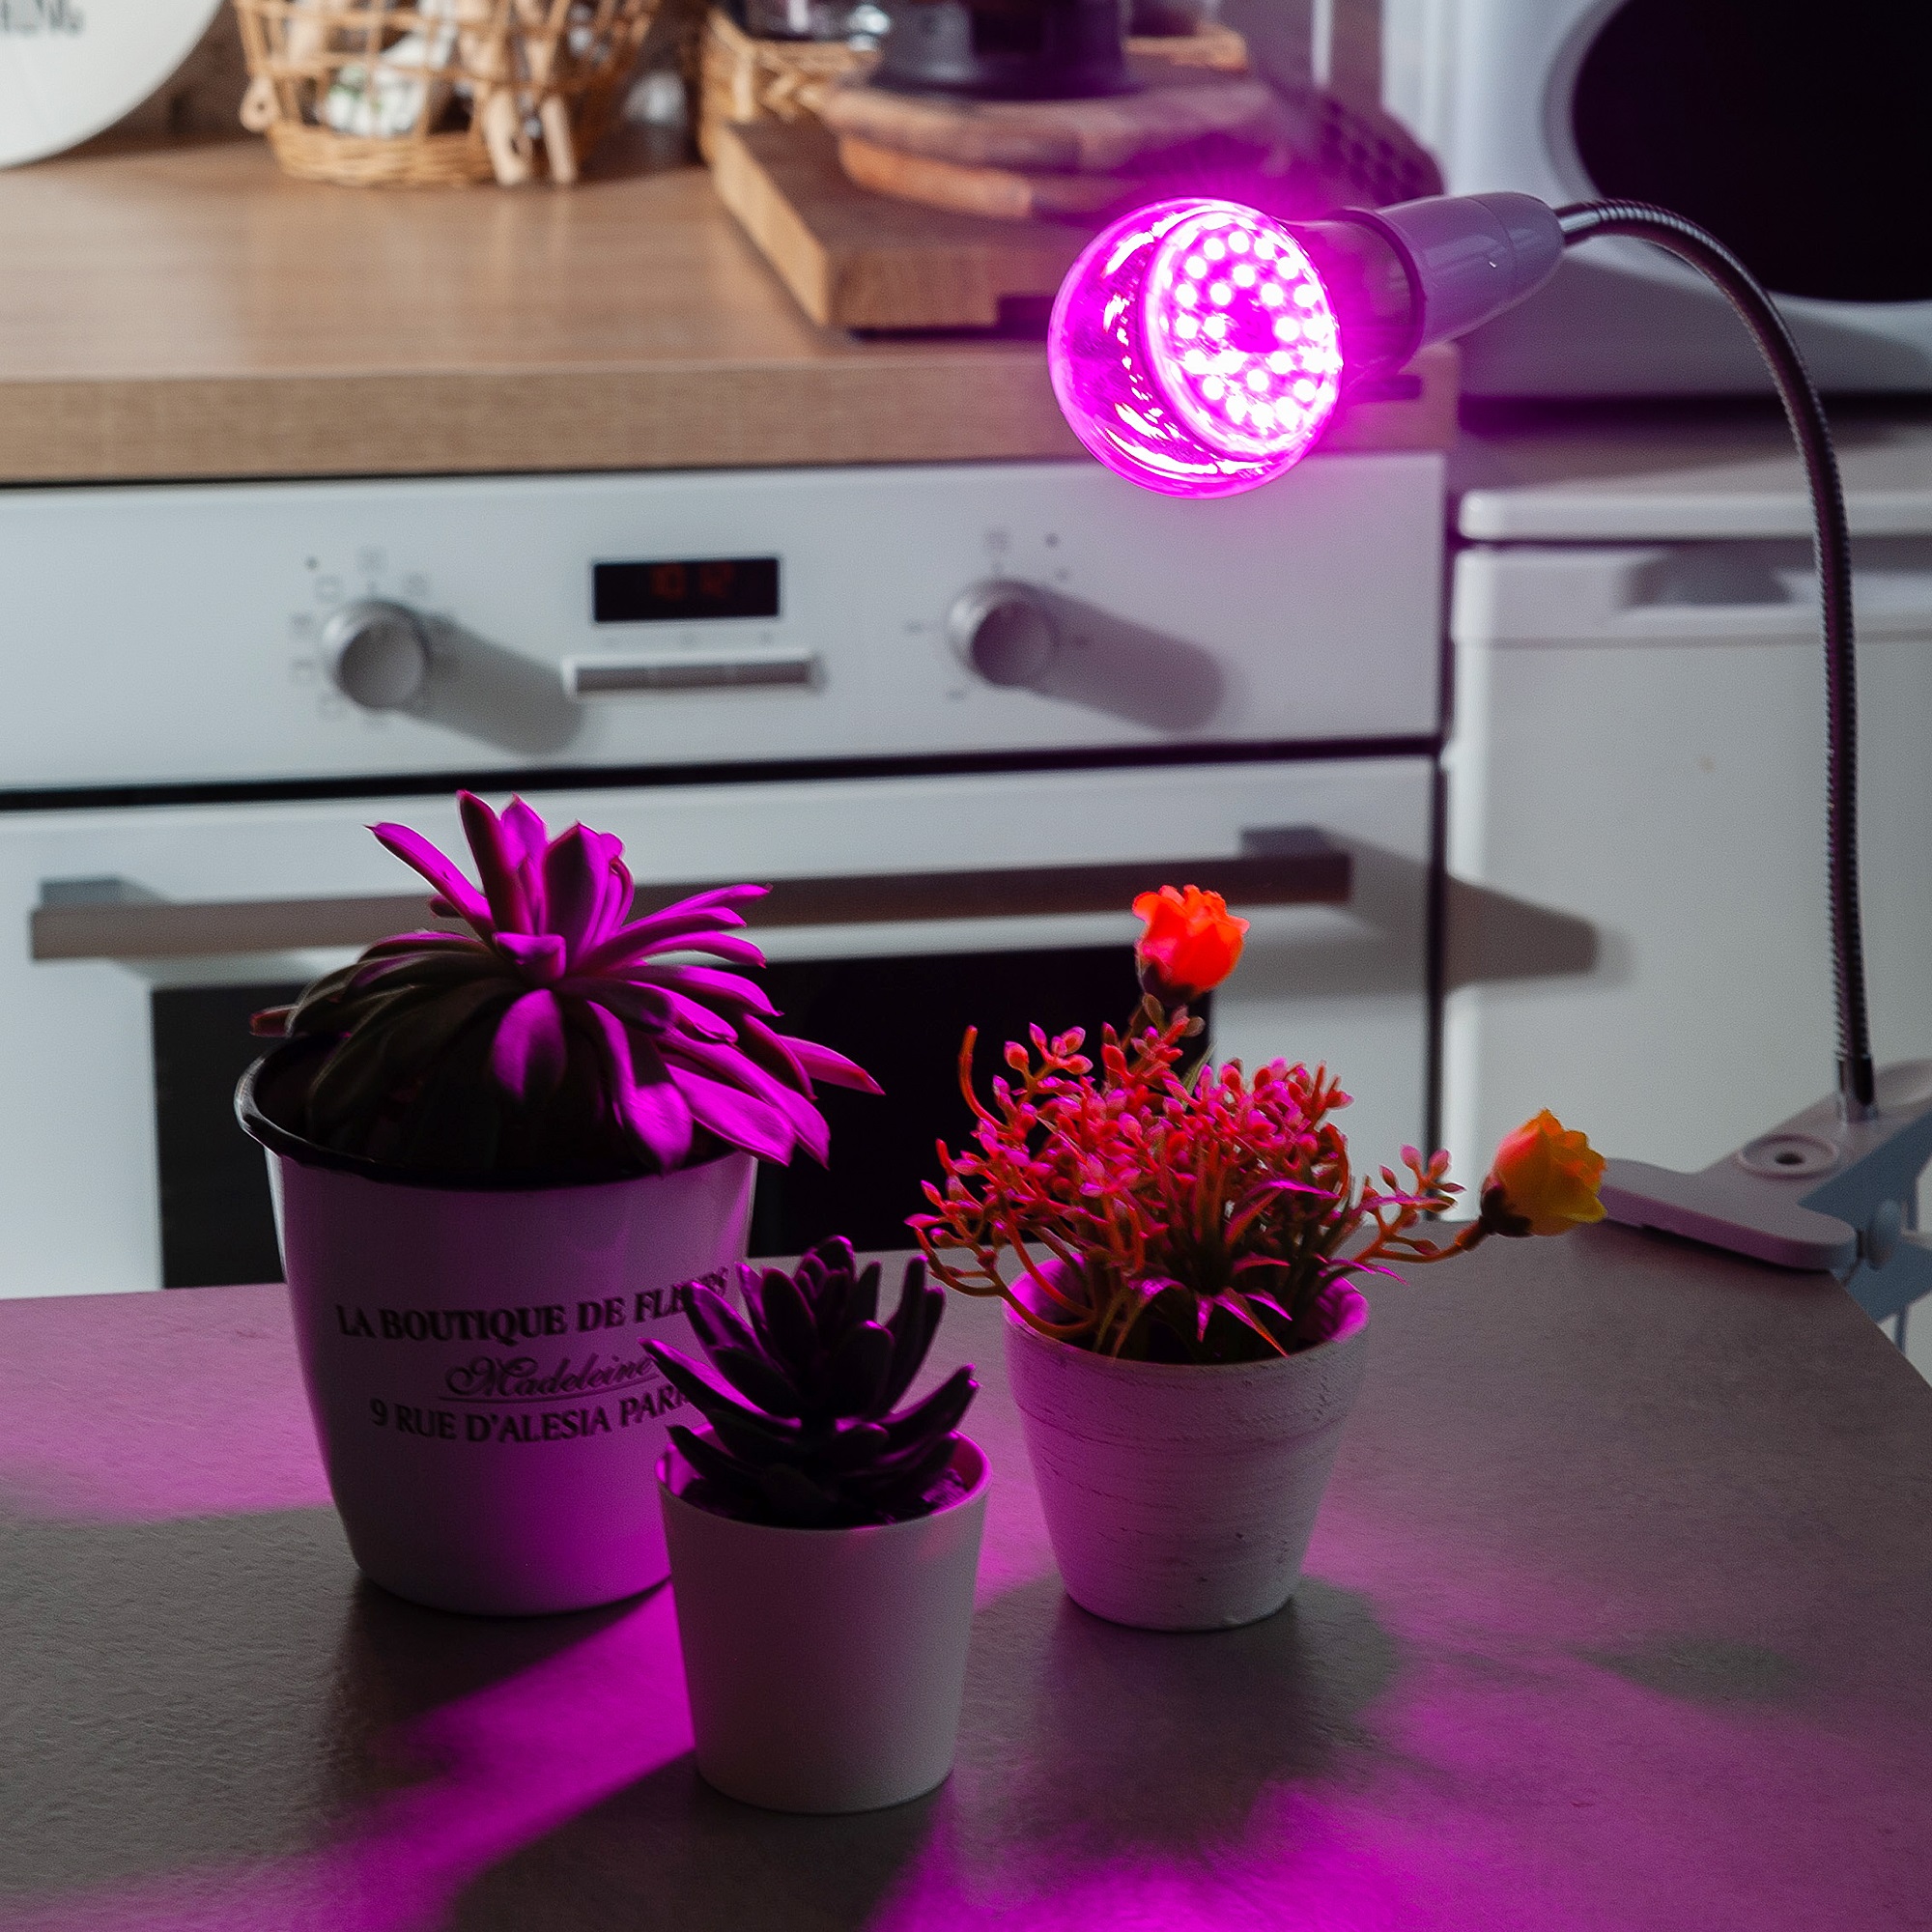 LED-A60-8W-SPSB-E27-CL PLP30GR Лампа светодиодная для растений. Форма A. прозрачная. Спектр для рассады и цветения. Картон. ТМ ФитоЛето